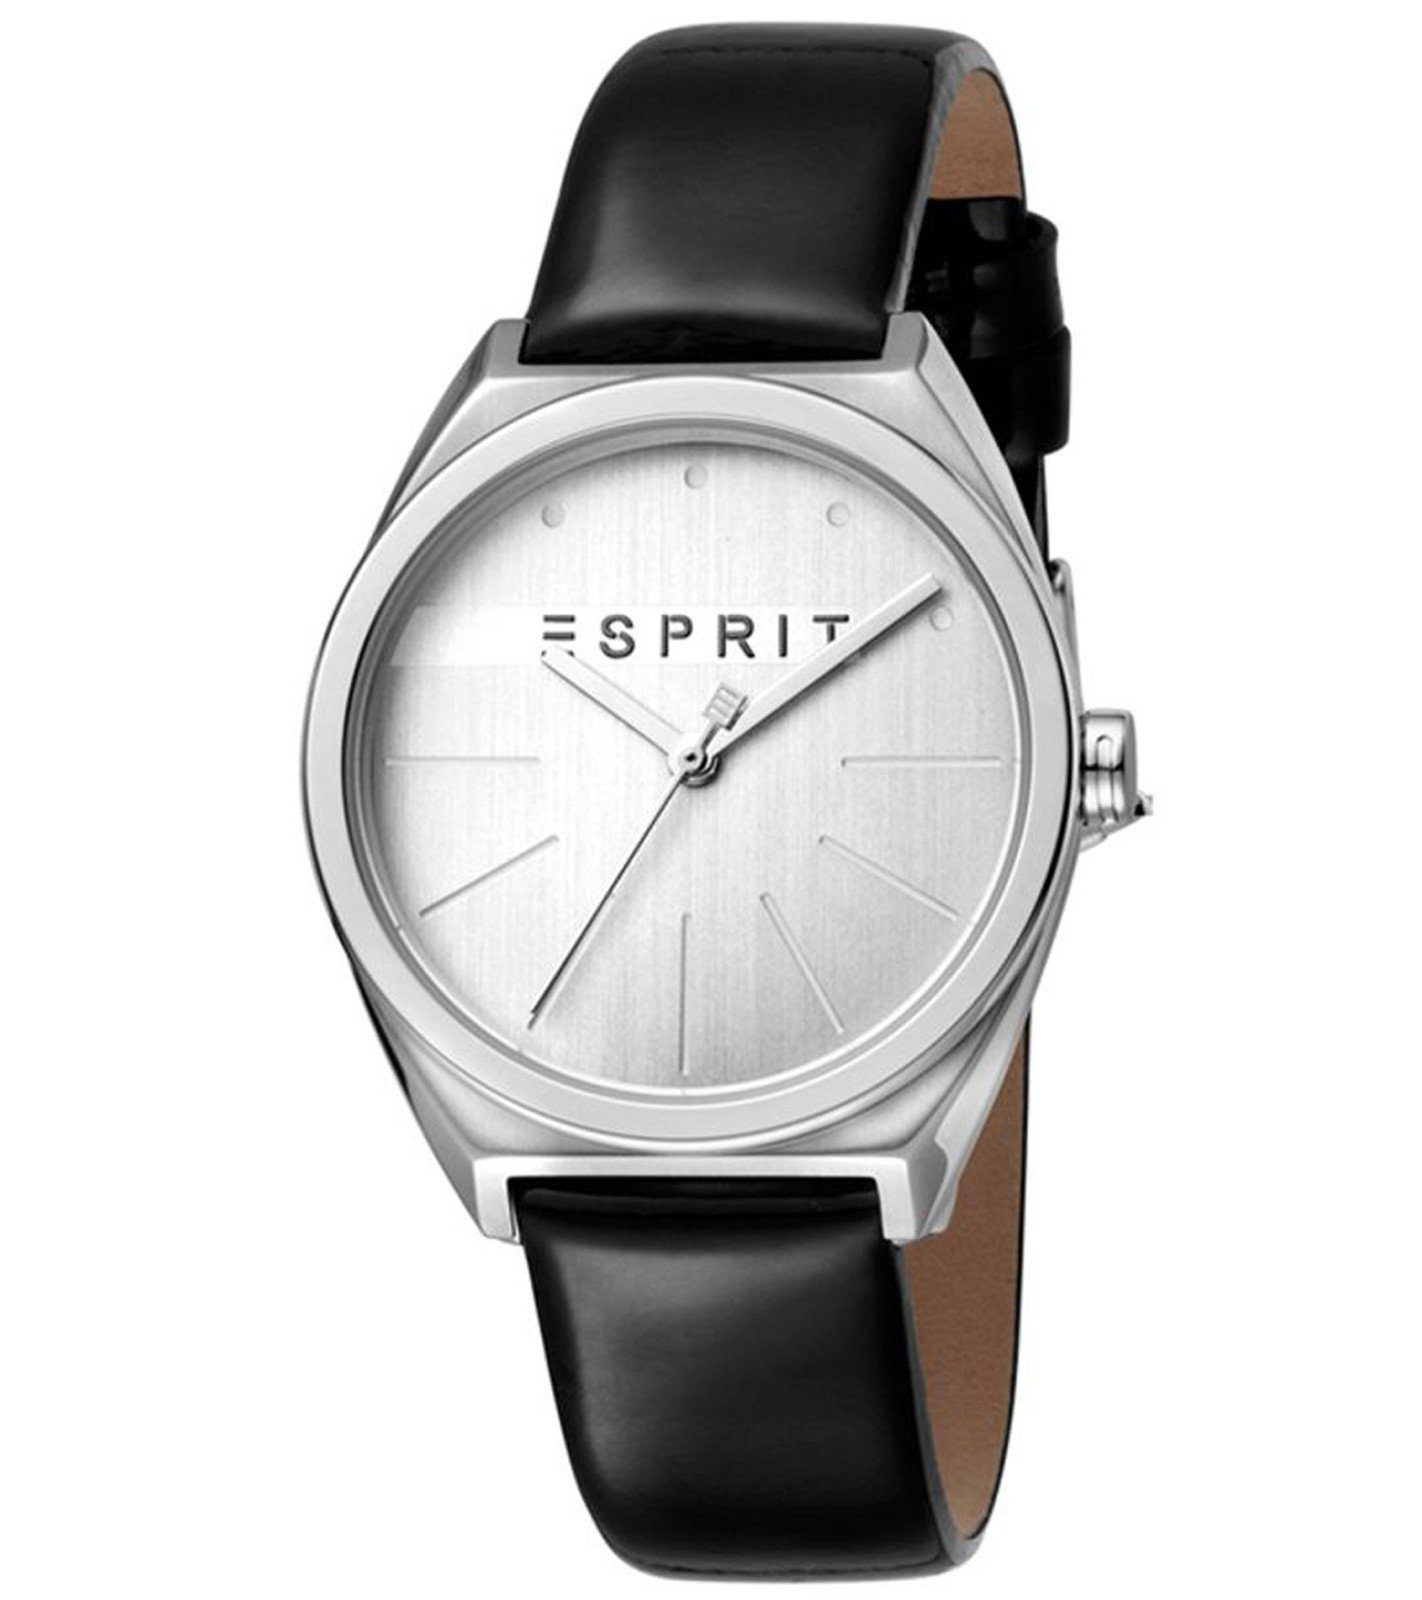 Esprit Quarzuhr »ESPRIT Damen Armband-Uhr analoge Quarz-Uhr mit Leder- Armband Designer-Uhr Silber/Schwarz« online kaufen | OTTO